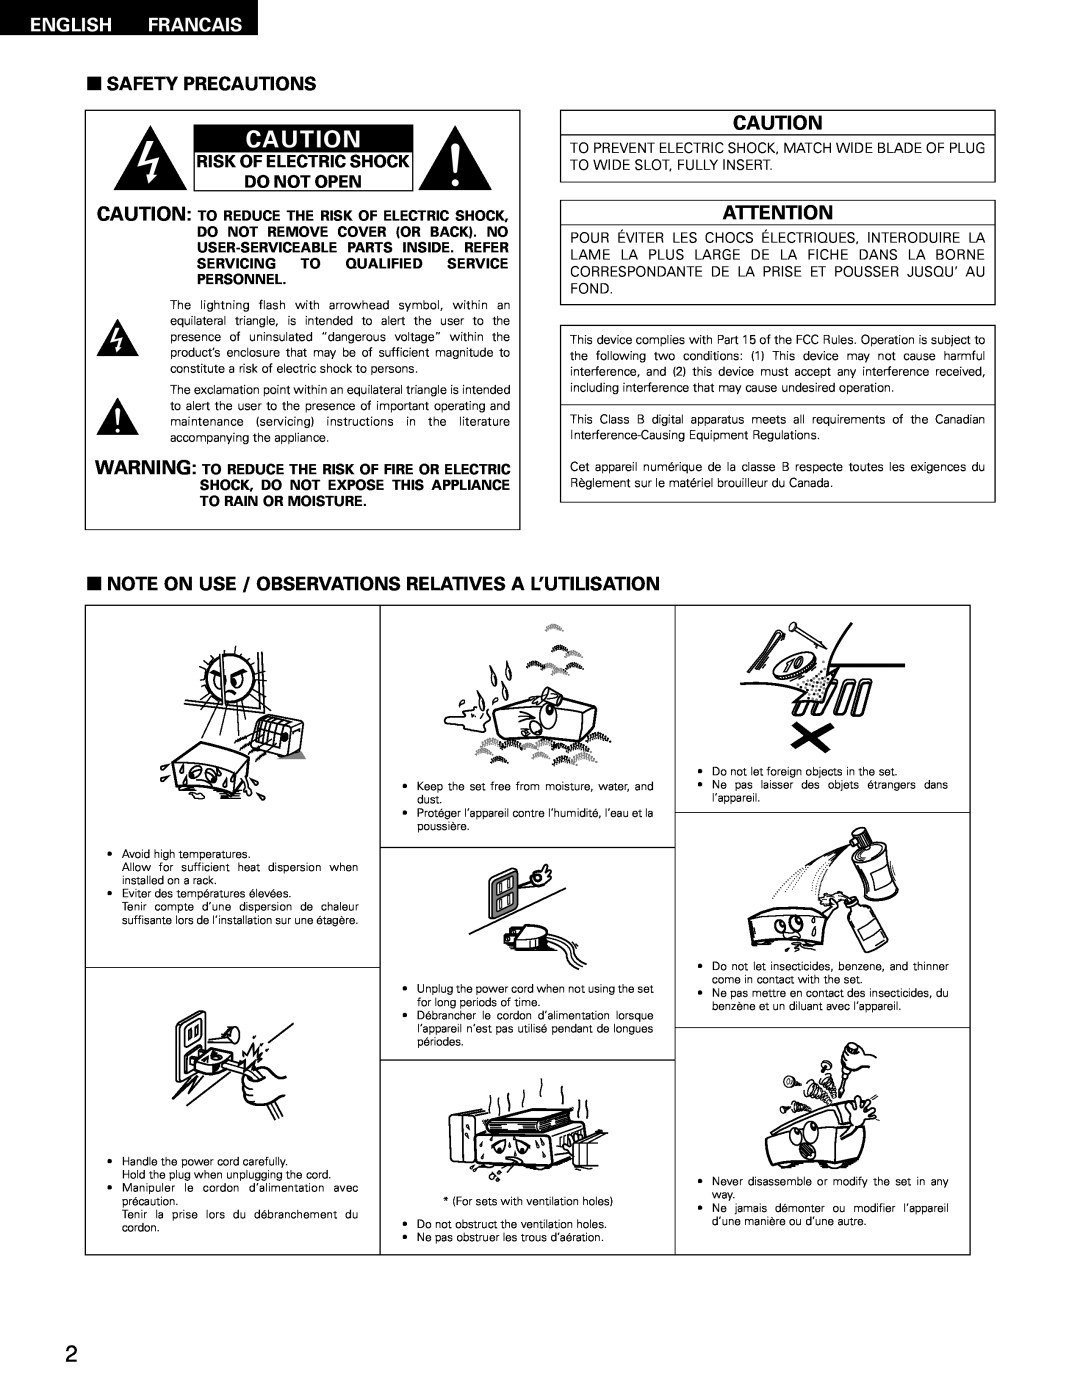 Denon 483, AVR-1403 manual English Francais, 2SAFETY PRECAUTIONS, Risk Of Electric Shock Do Not Open 